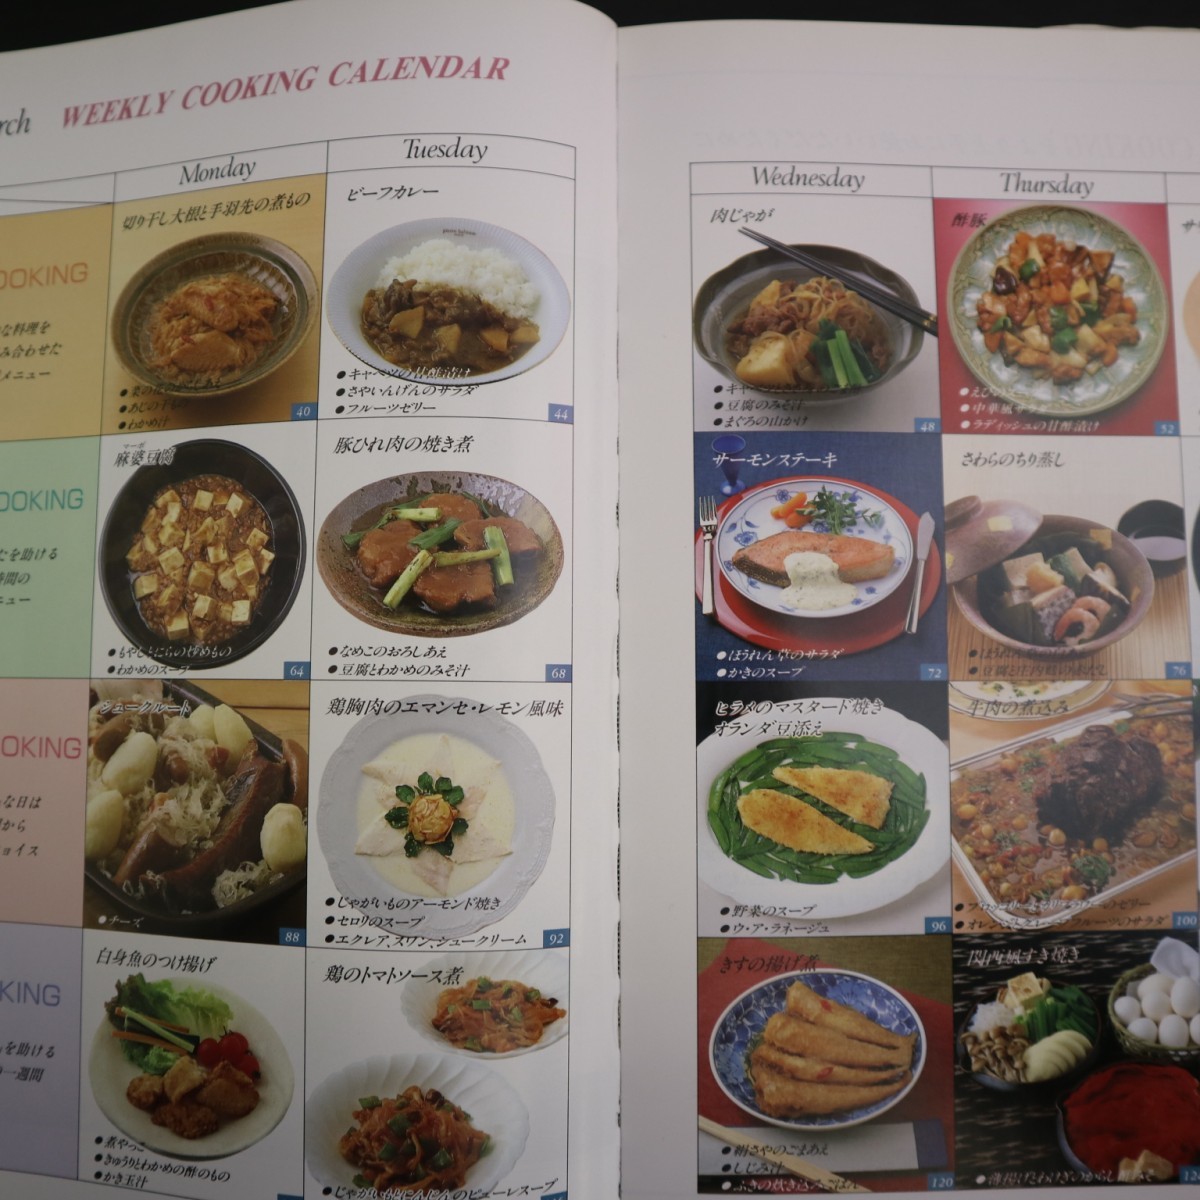 特2 51215 / SHUN COOKING 3月の料理カレンダー 1994年3月1日発行 菜の花の煮びたし 切り干し大根と手羽先の煮もの 鶏むね肉のエマンセ_画像5